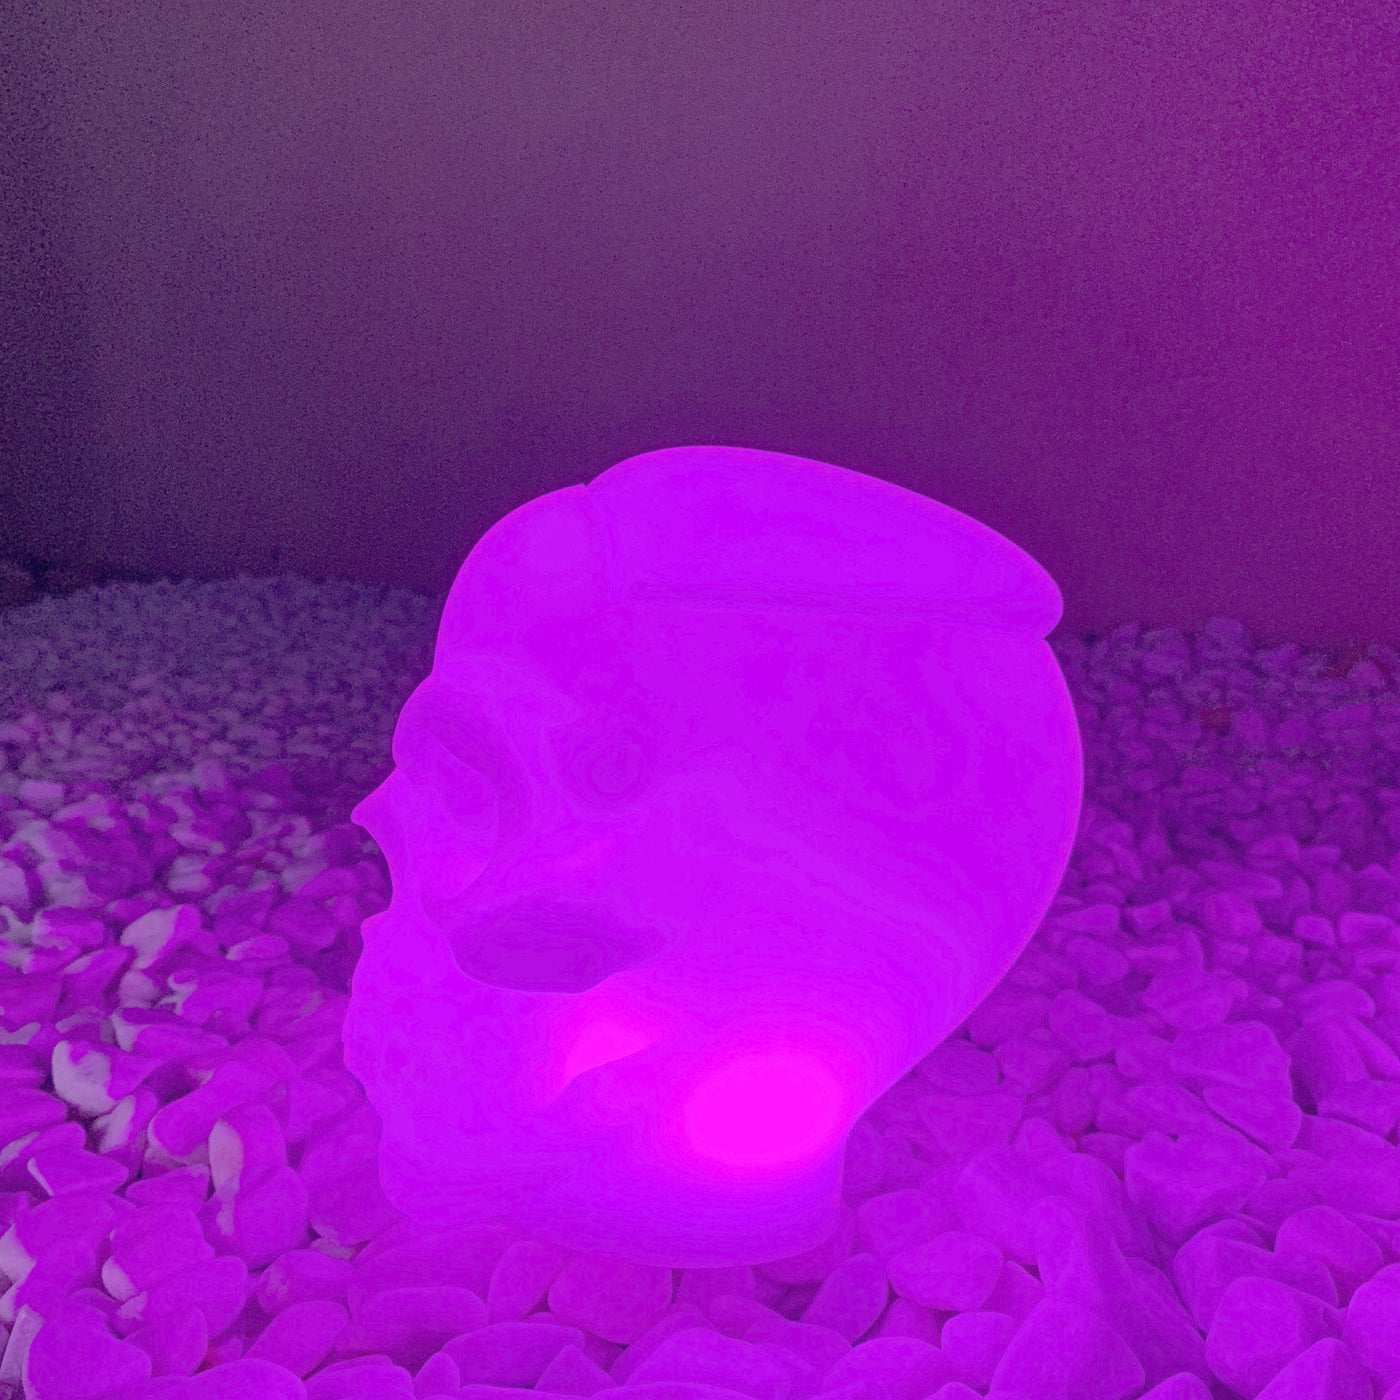 Lampe tête de mort tête squelette crâne LED - 3 modèles au choix !